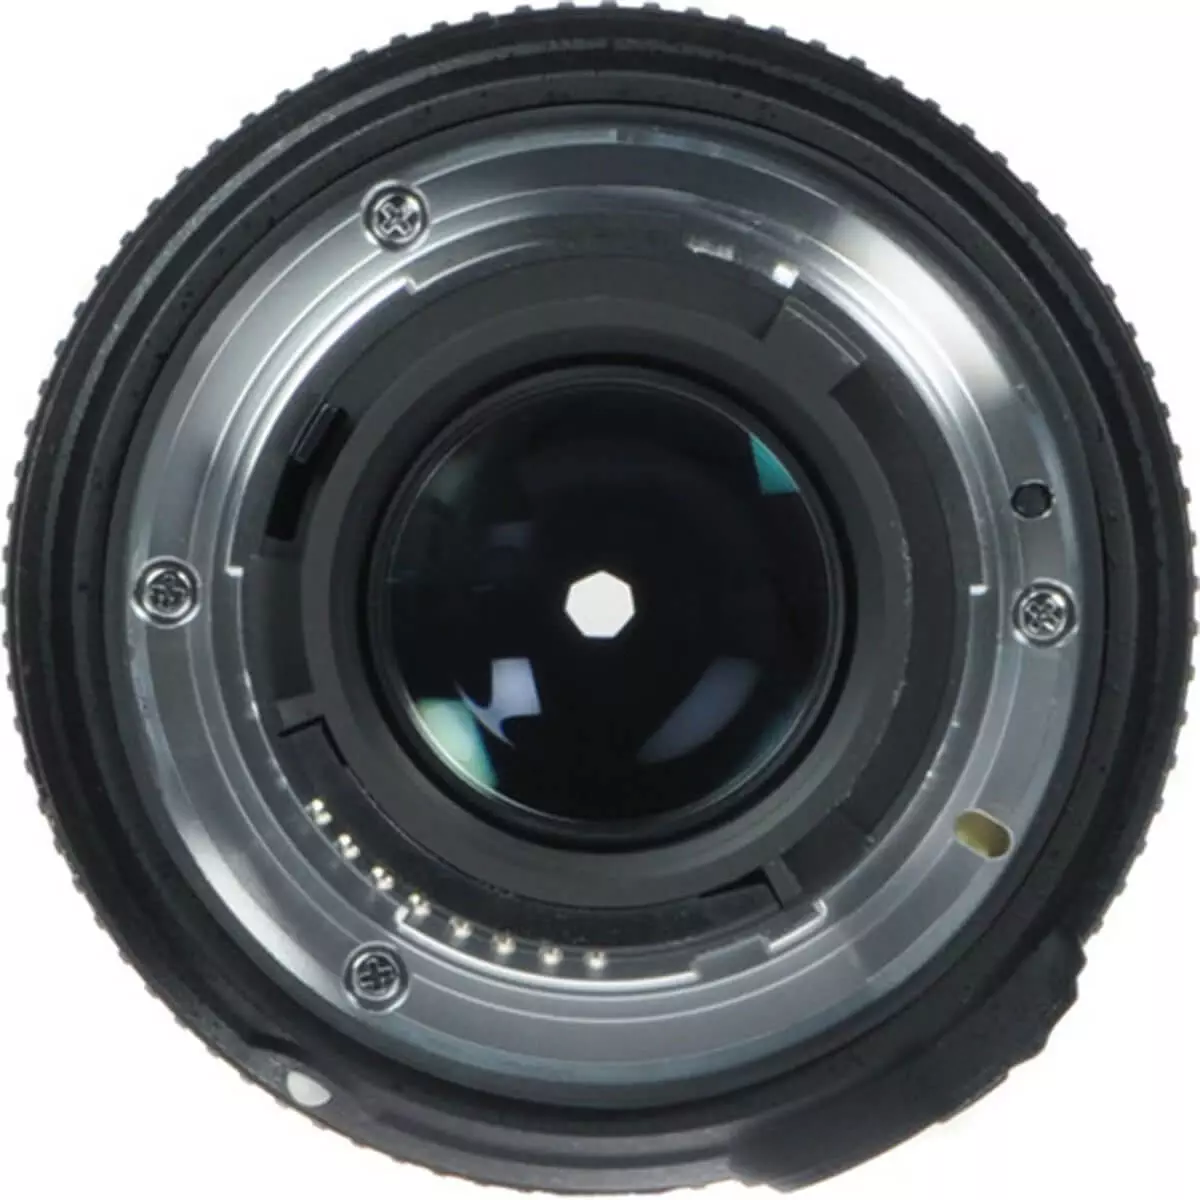 Nikon Lens AF-S 50mm F1.8 G 6